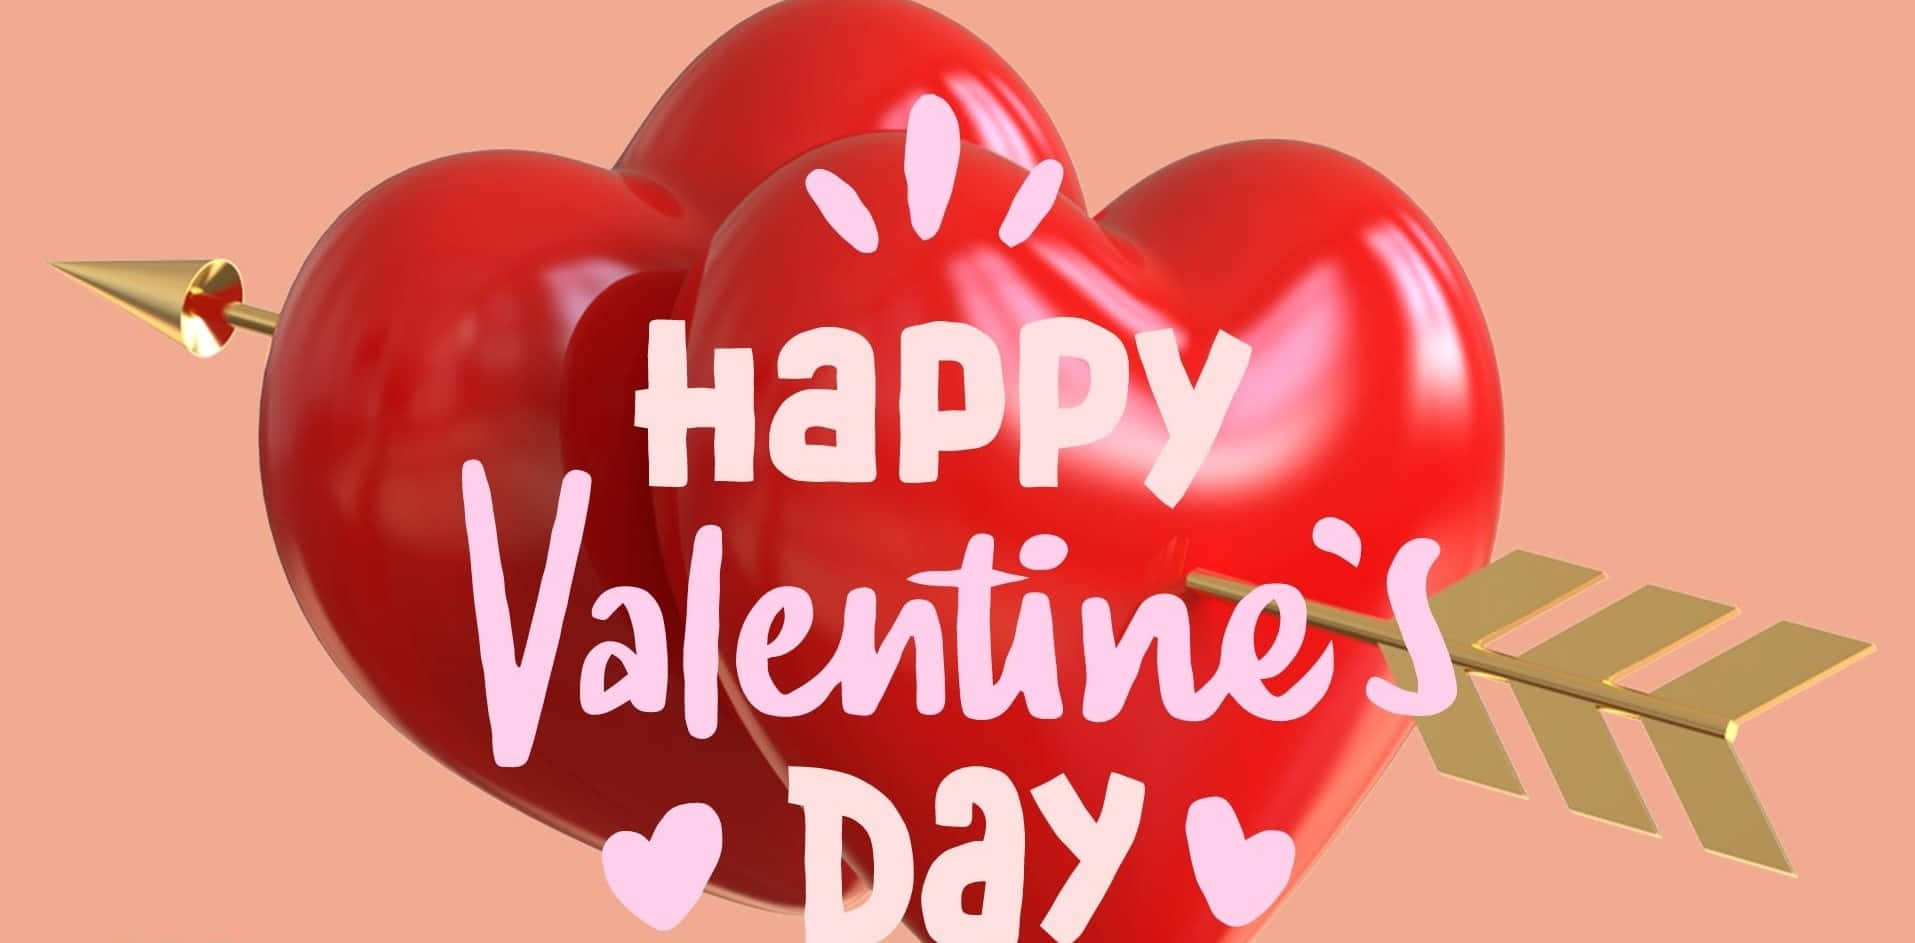 Celebrael Amor Con Un Atractivo Fondo De Pantalla De Alta Resolución Para El Día De San Valentín.